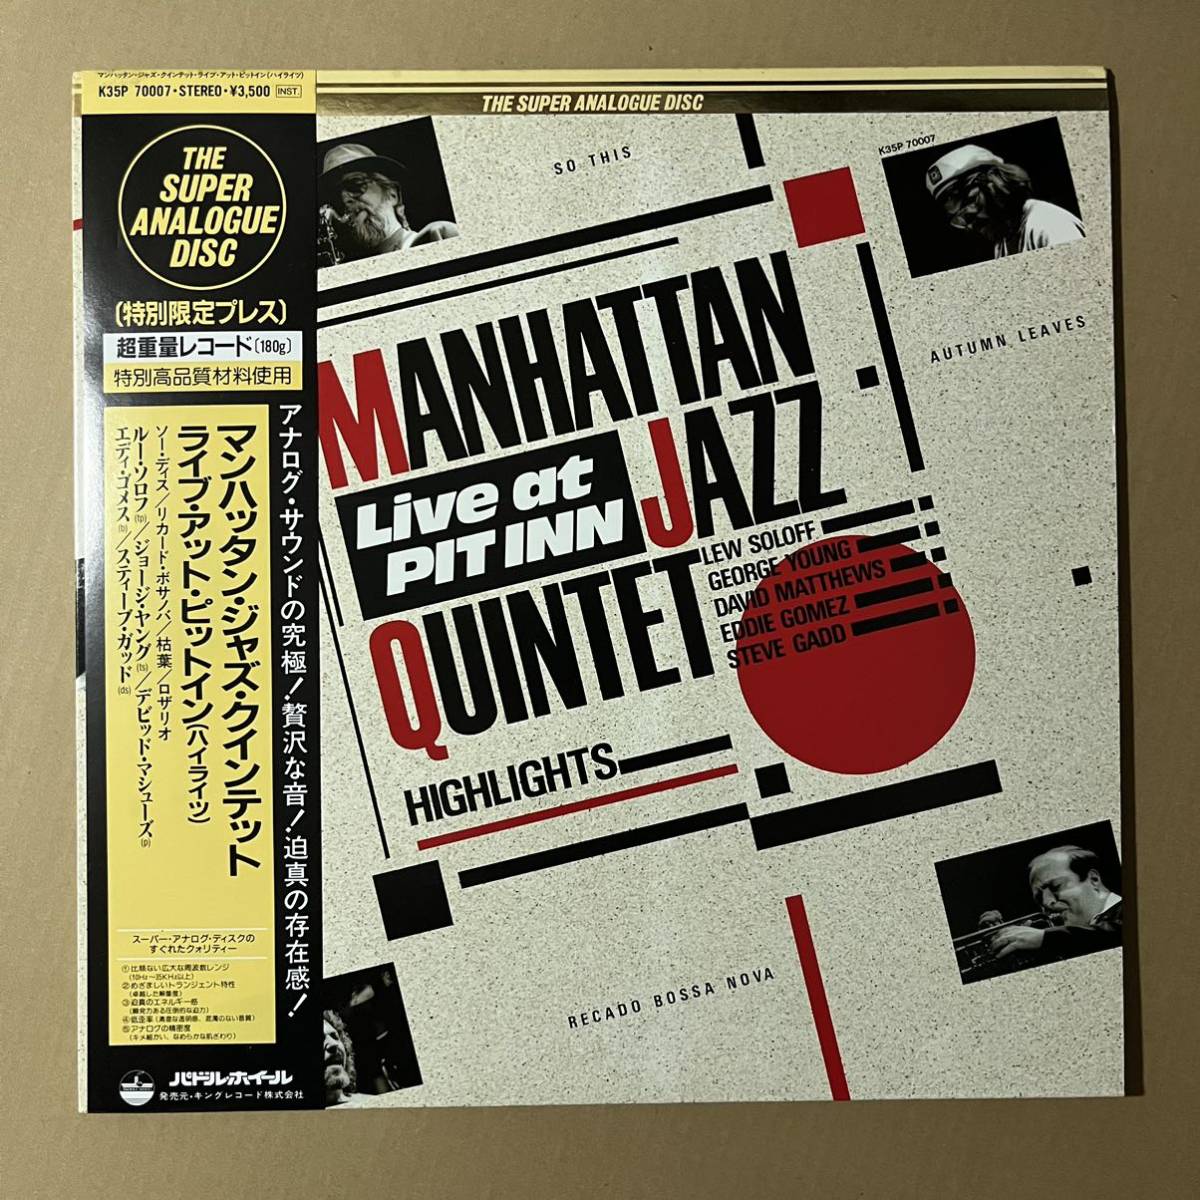 帯付き / 180g重量盤 / 高音質 KING / Manhattan Jazz Quintet / Live at Pit Inn / Super Analogue Discの画像1